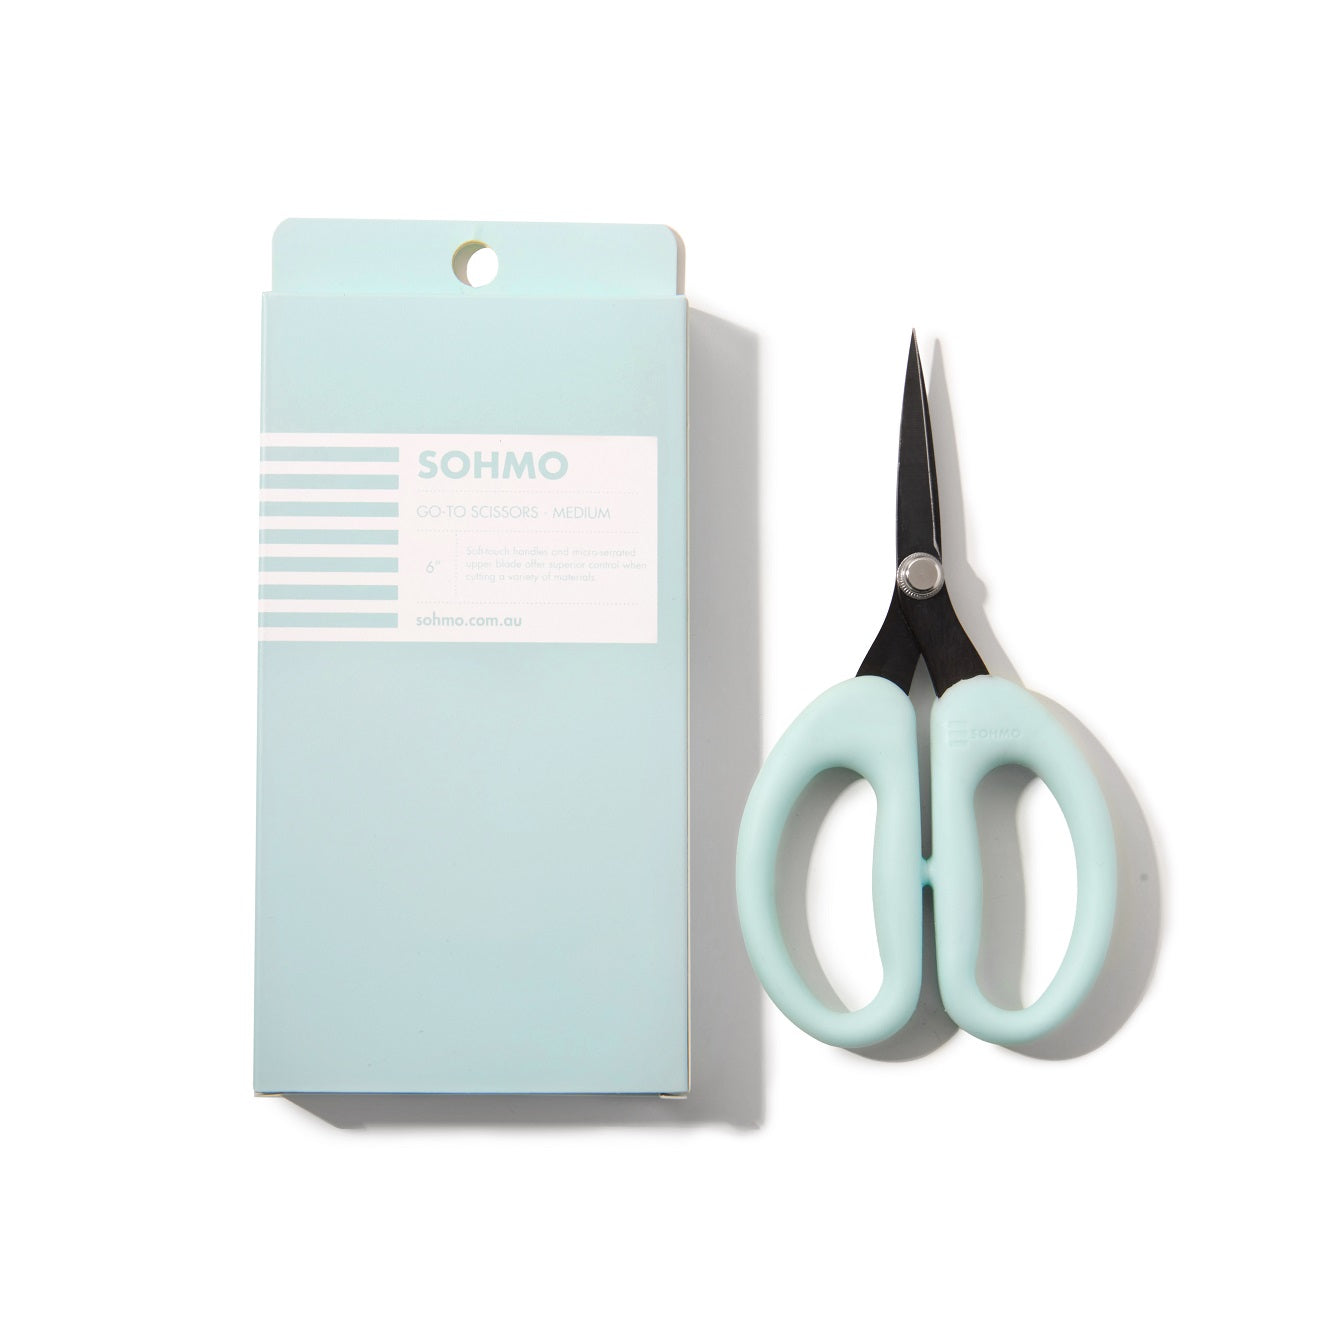 SOHMO Go-To blue scissors with soft handles